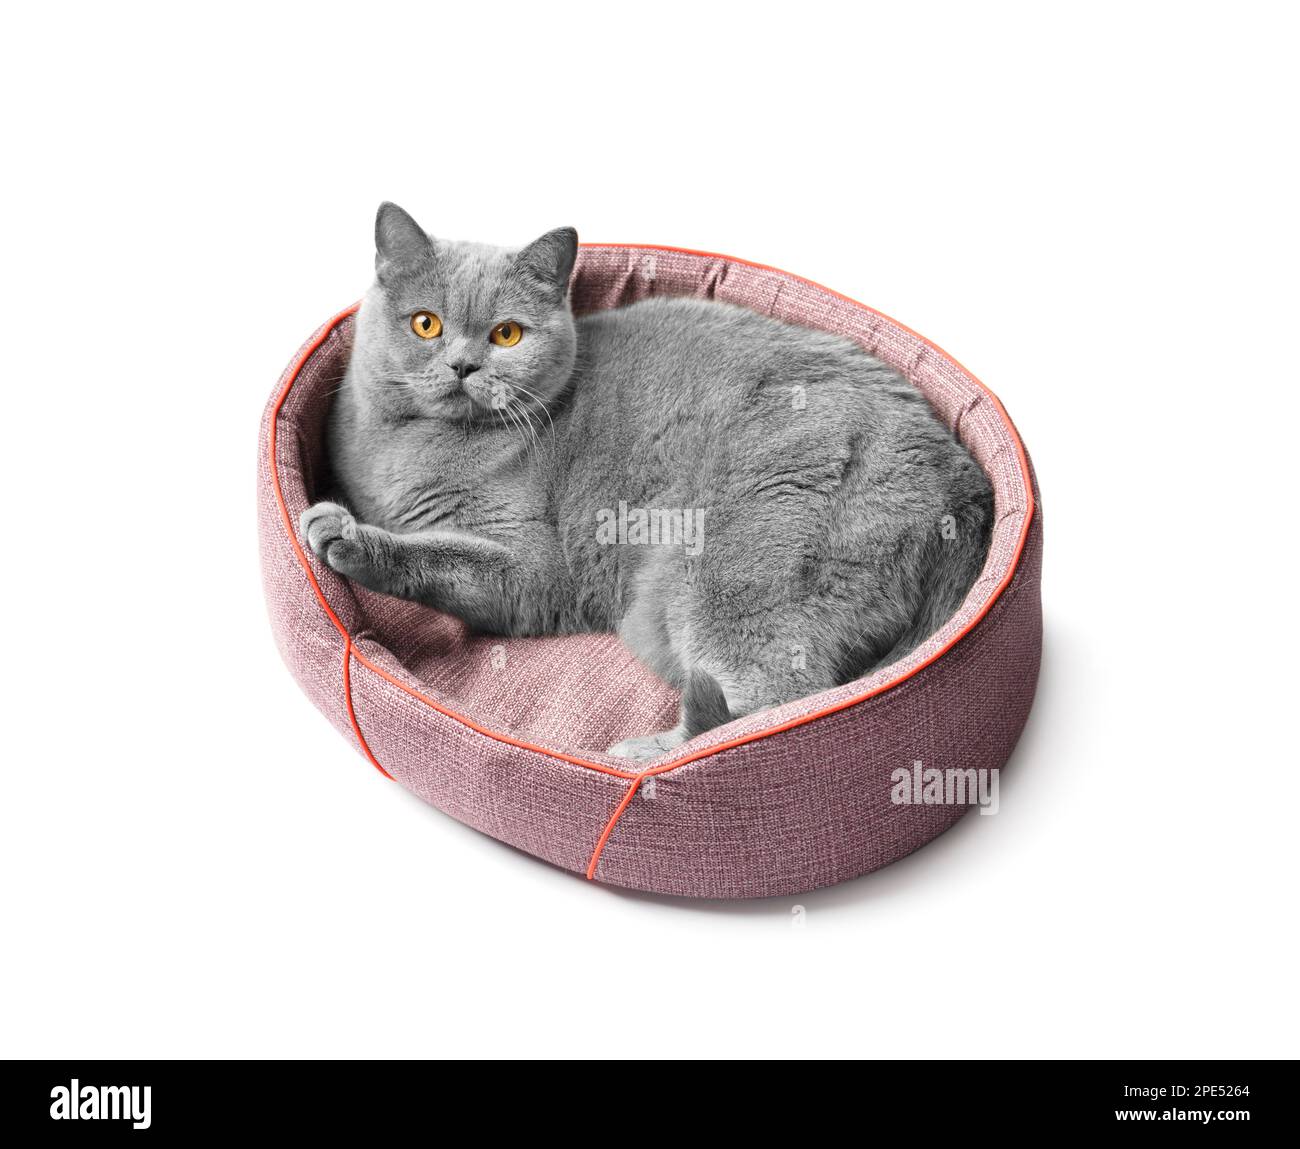 Le chat britannique se trouve dans un lit d'animal doux et regarde l'appareil photo sur un fond blanc, accessoires pour animaux. Banque D'Images